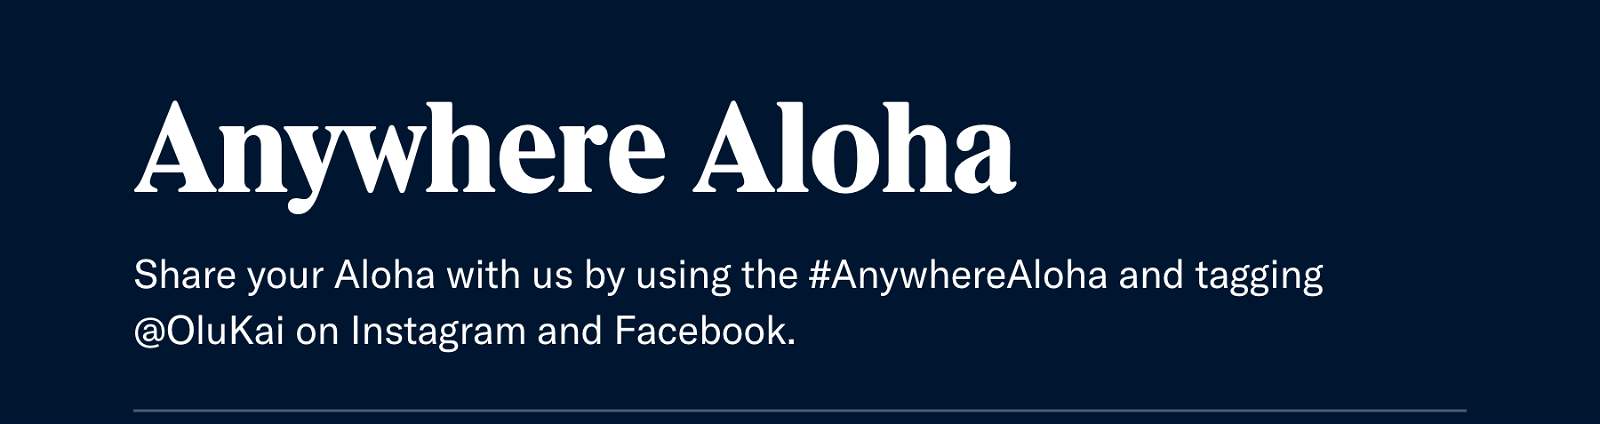 Anywhere Aloha